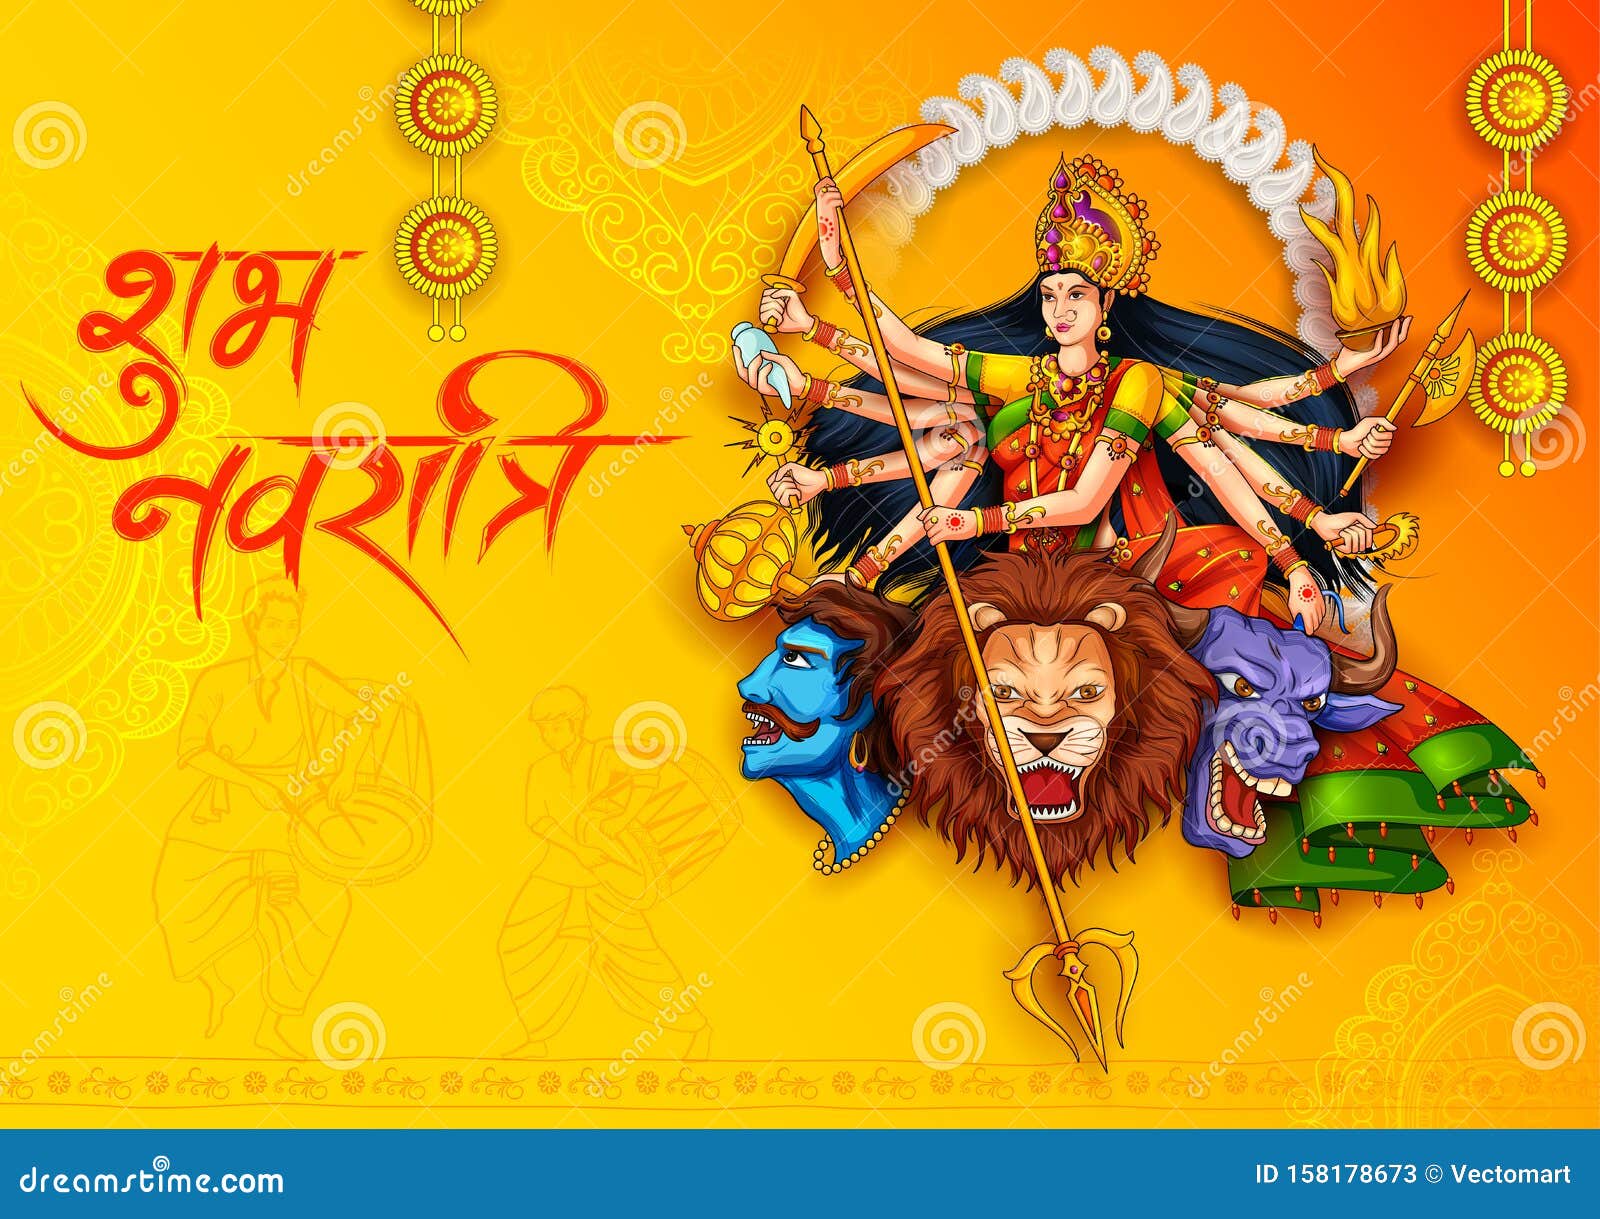 Durga Puja là một trong những lễ hội lớn nhất của người Hindu, đánh dấu cuộc chiến giữa Nữ thần Durga và ác quỷ Mahishasura. Cùng xem hình ảnh liên quan để cảm nhận sự hào hứng và sắc màu của lễ hội này. 